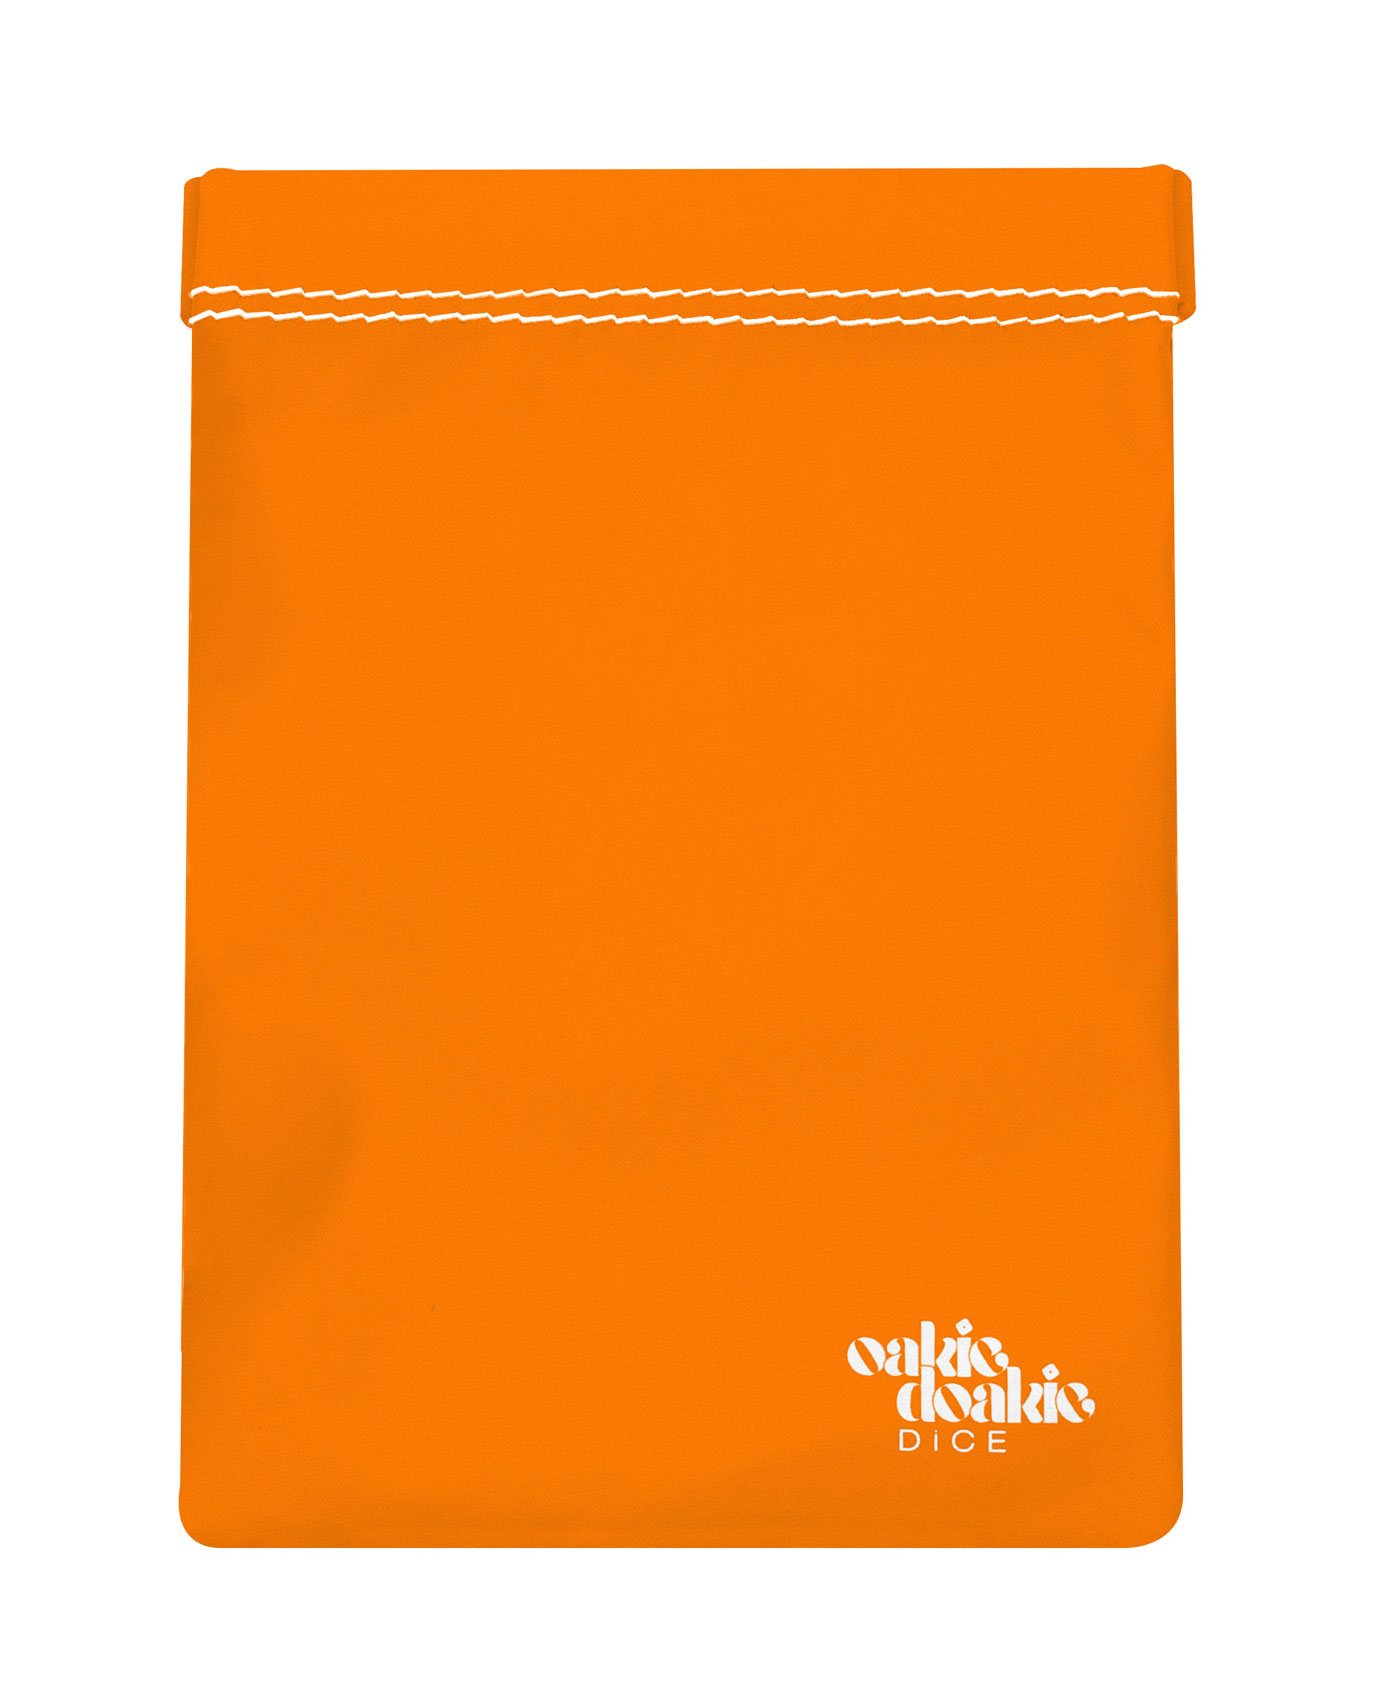 Vrecko na kocky - Oakie Doakie Dice Bag large - orange